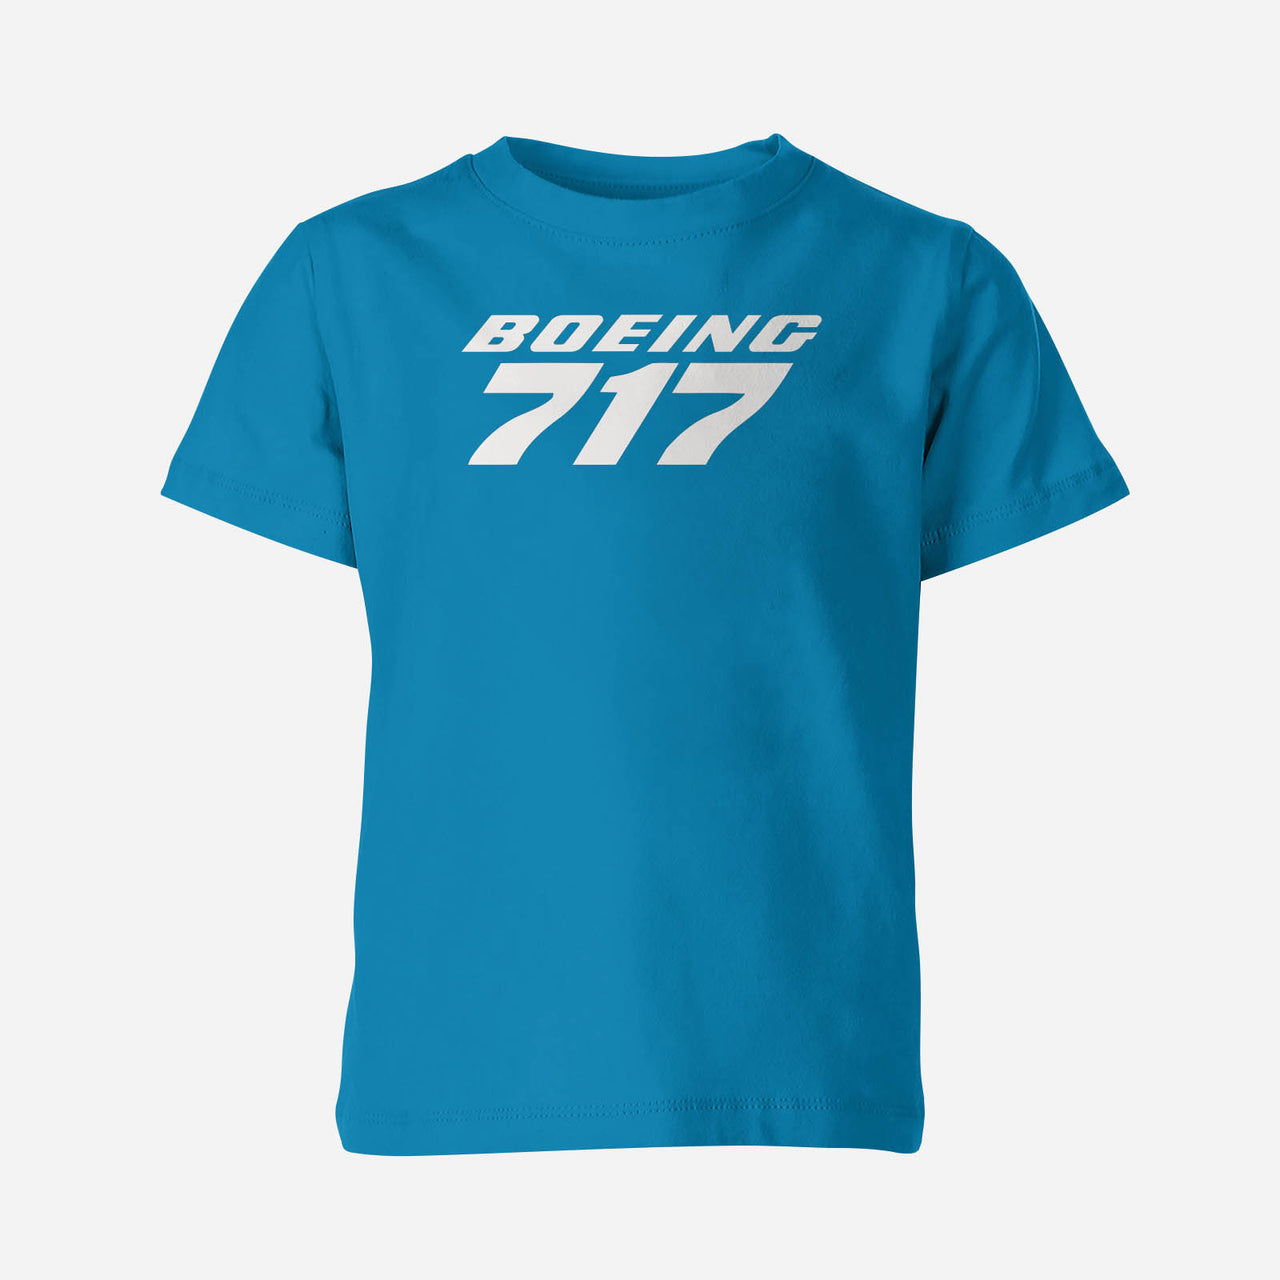 Boeing 717 & Text Designed Children T-Shirts